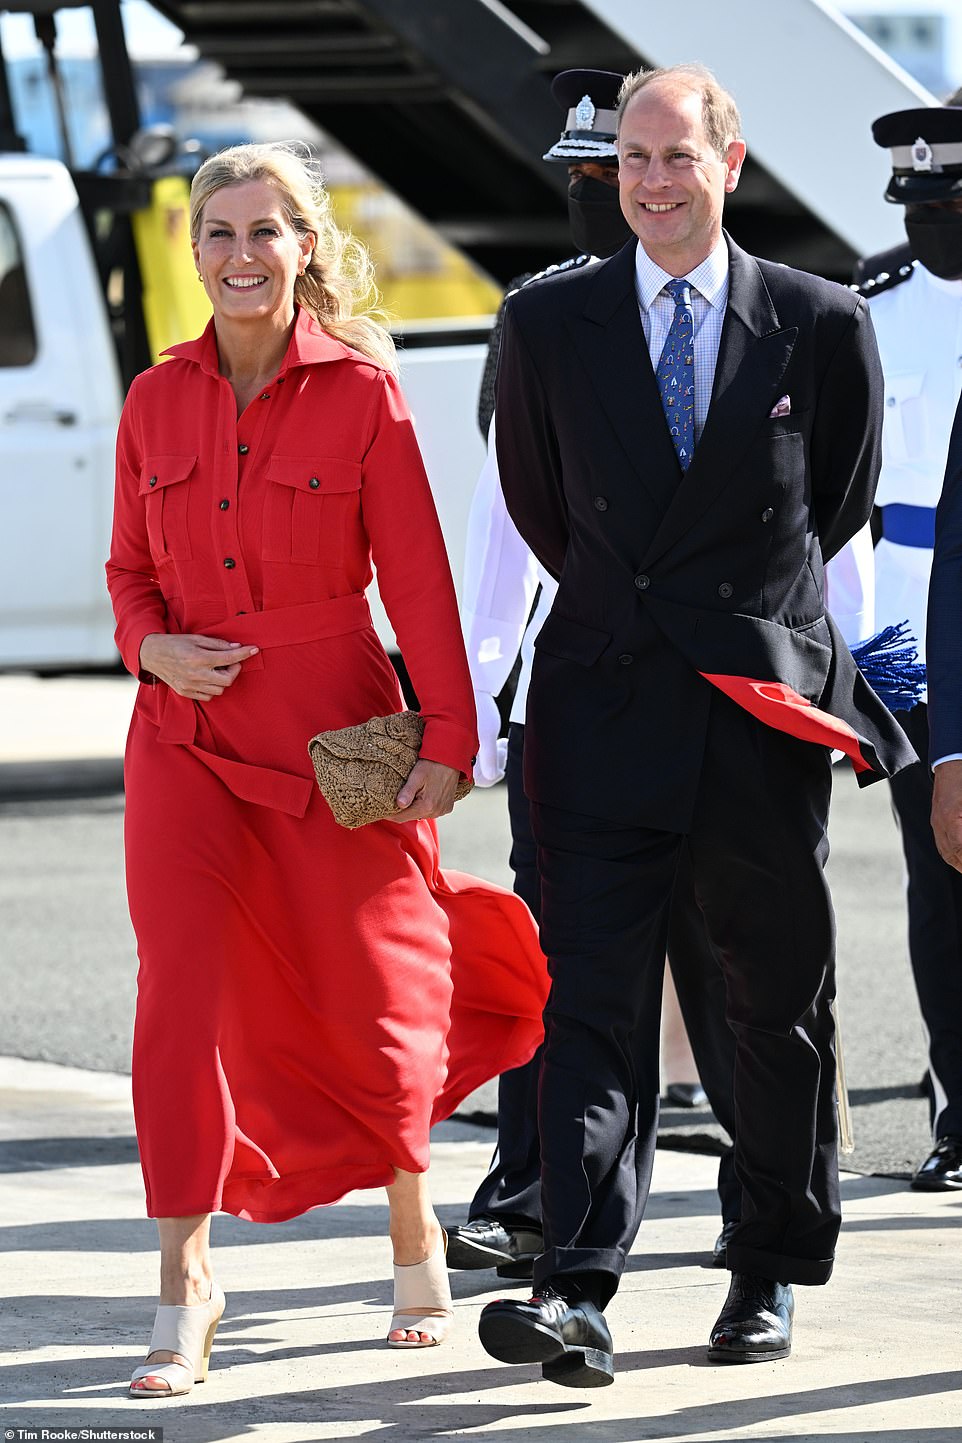 Príncipe Edward e Sophie Wessex, retratados aqui no Aeroporto Internacional de Hewanorra, começaram sua turnê de uma semana pelo Caribe em St. Lucia na sexta-feira